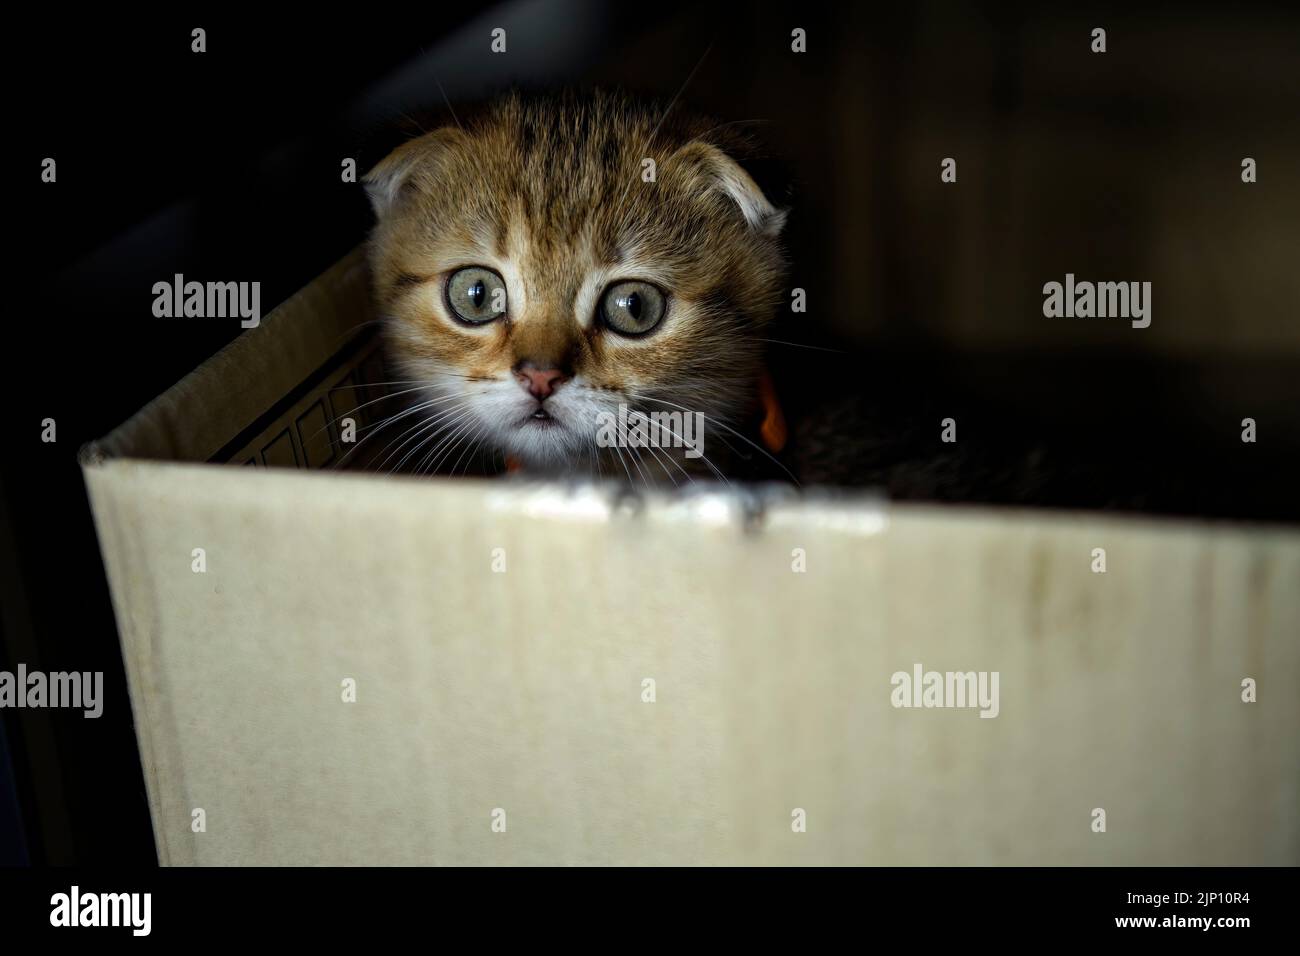 Cucciolo scozzese a righe che suonava pessimo e segretamente nella scatola al buio e guardando, il piccolo gatto nascosto in una scatola di cartone sembrava pietoso. Foto Stock